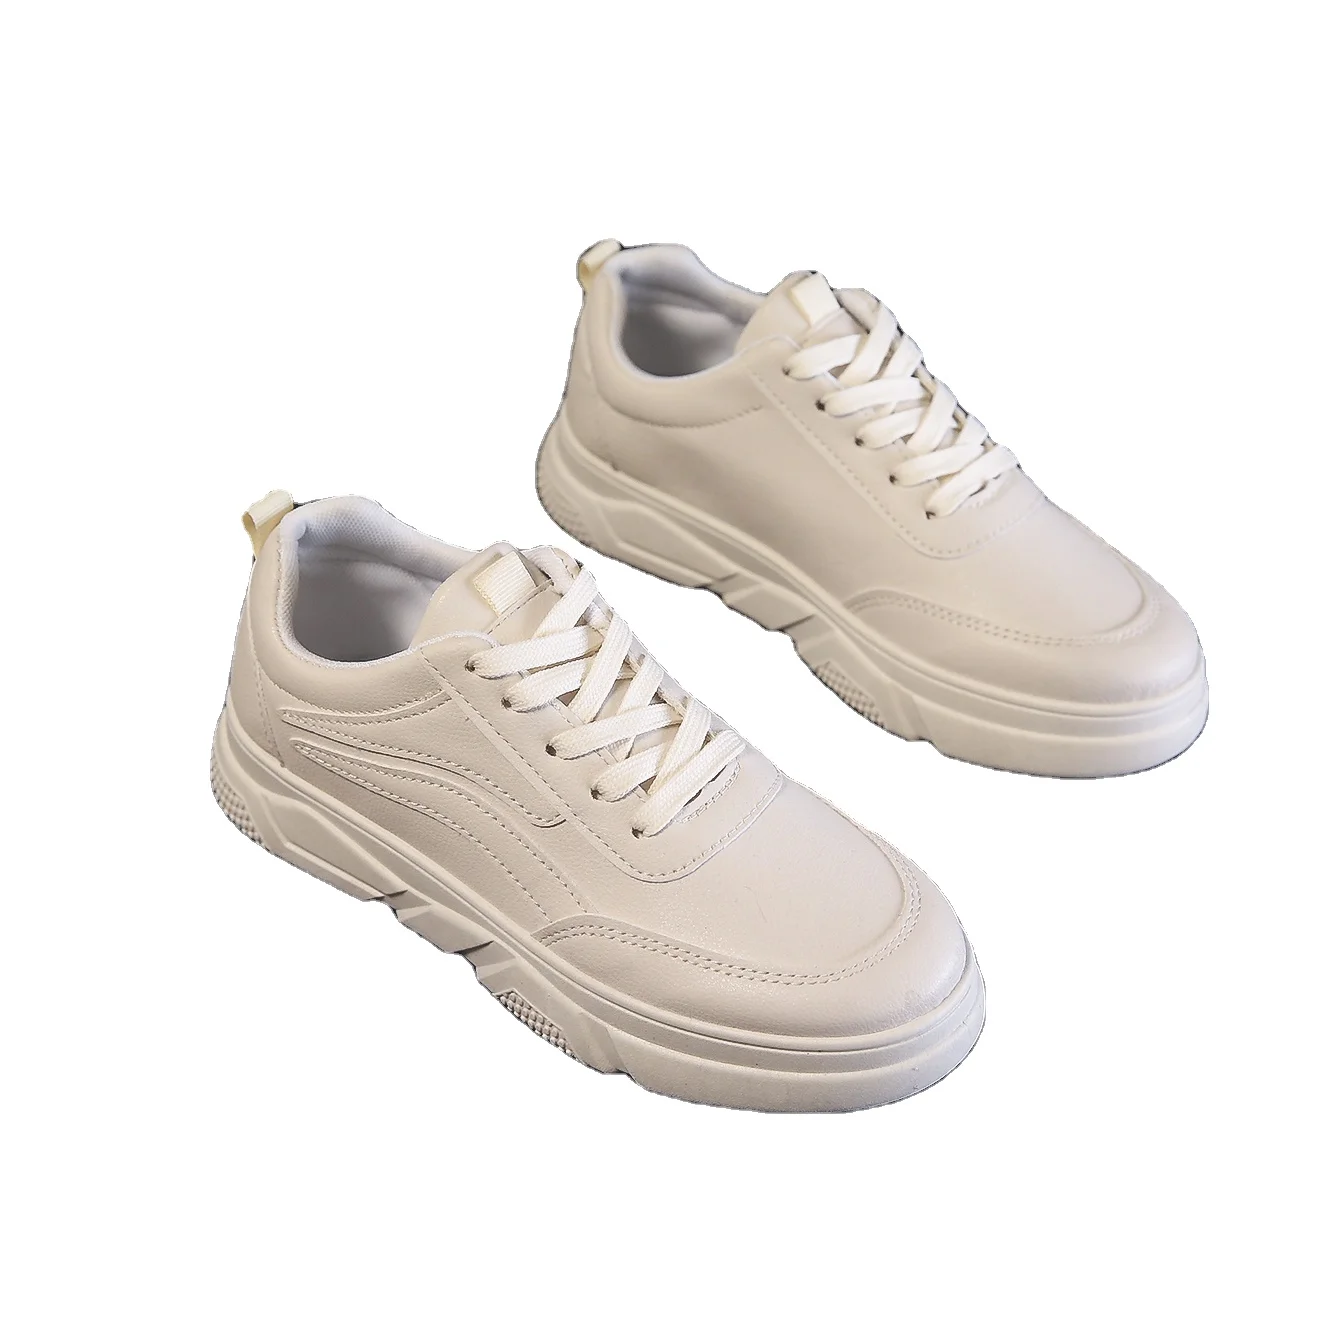 

skecher brand womens sneakers running shoes for women zapatos de mujer tenis feminino woman tennis shoes